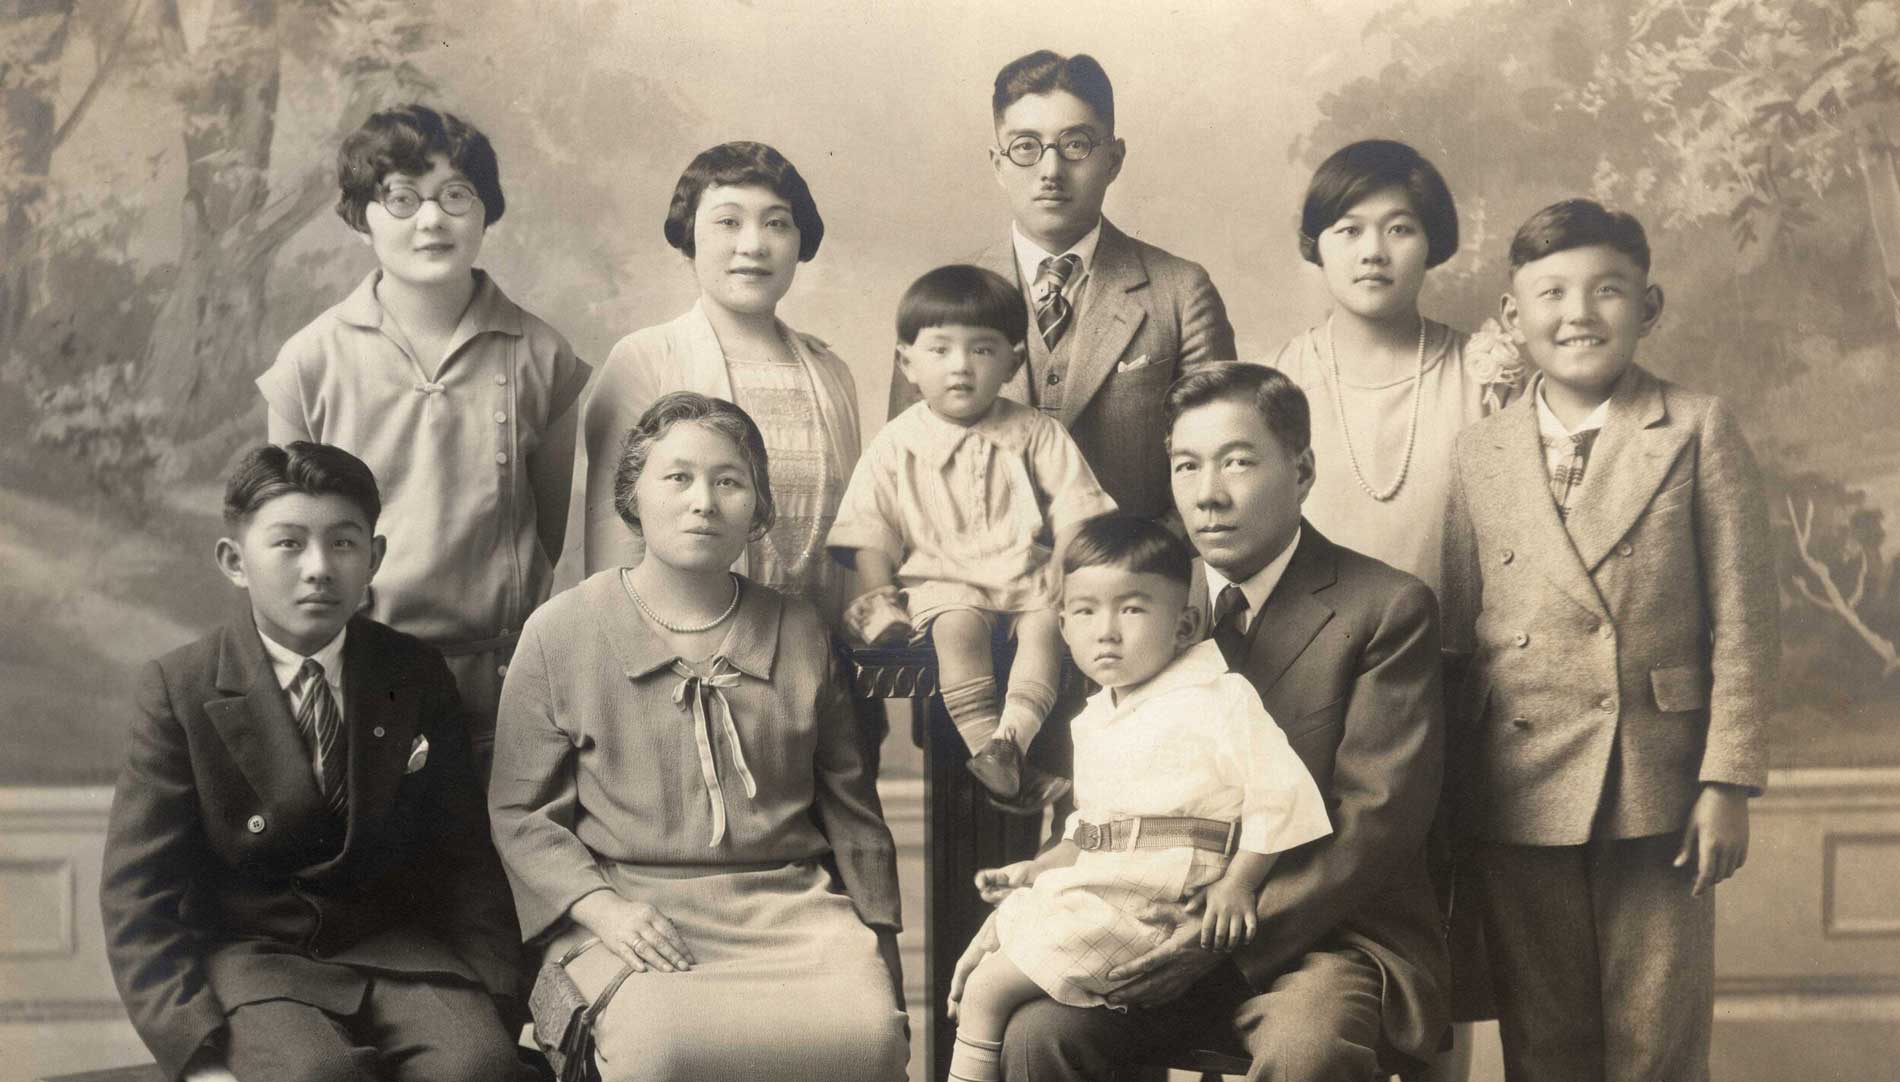 Harada family